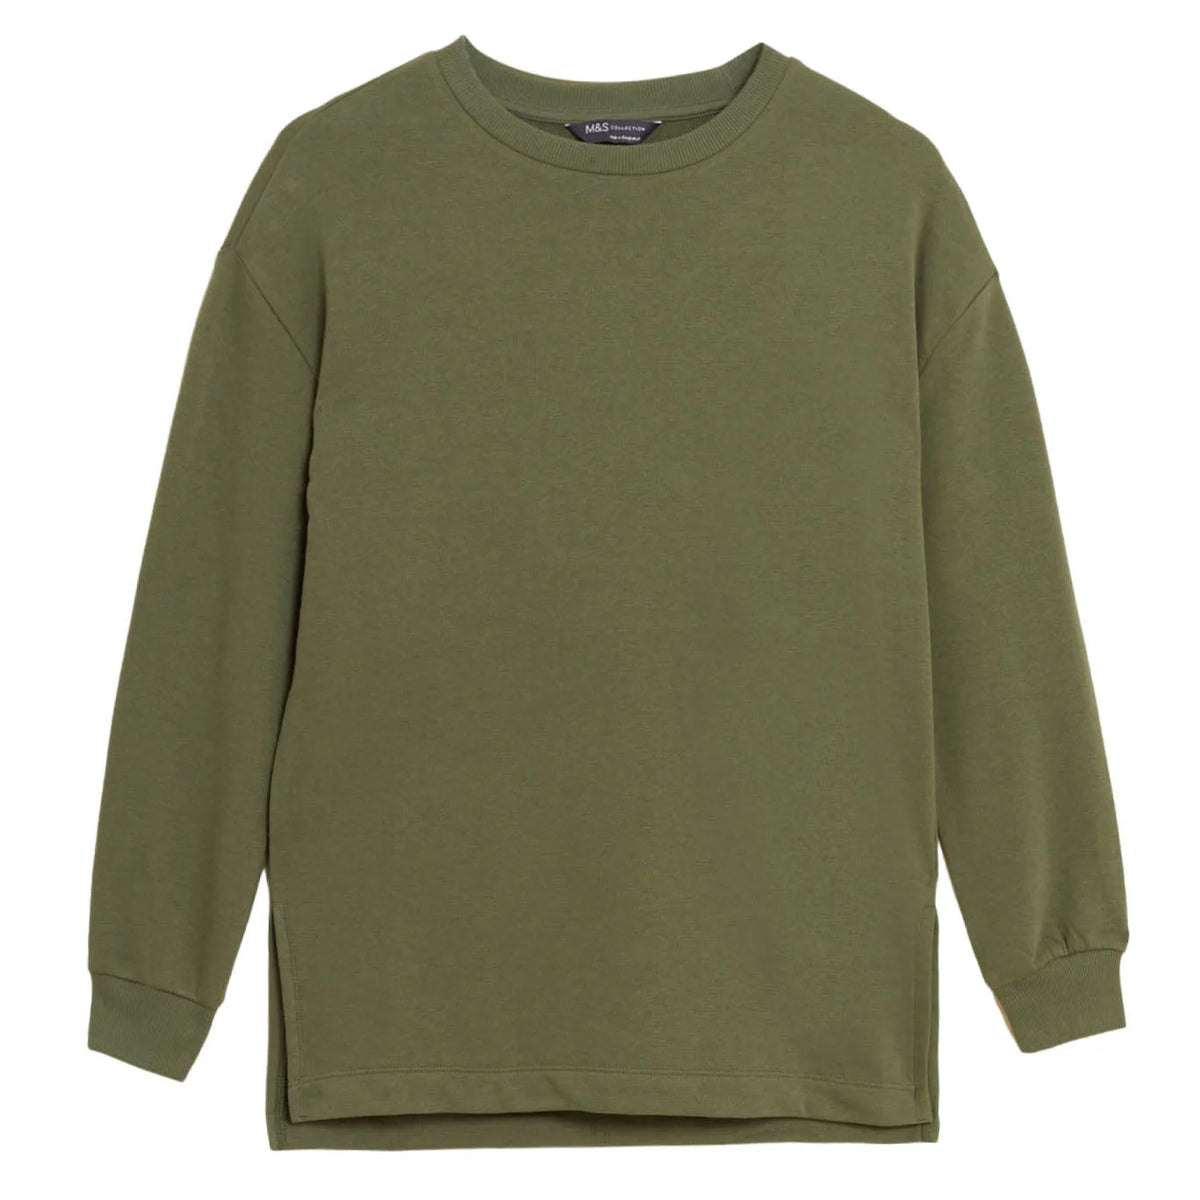 M&S Plain Cotton Rich Sweatshirt